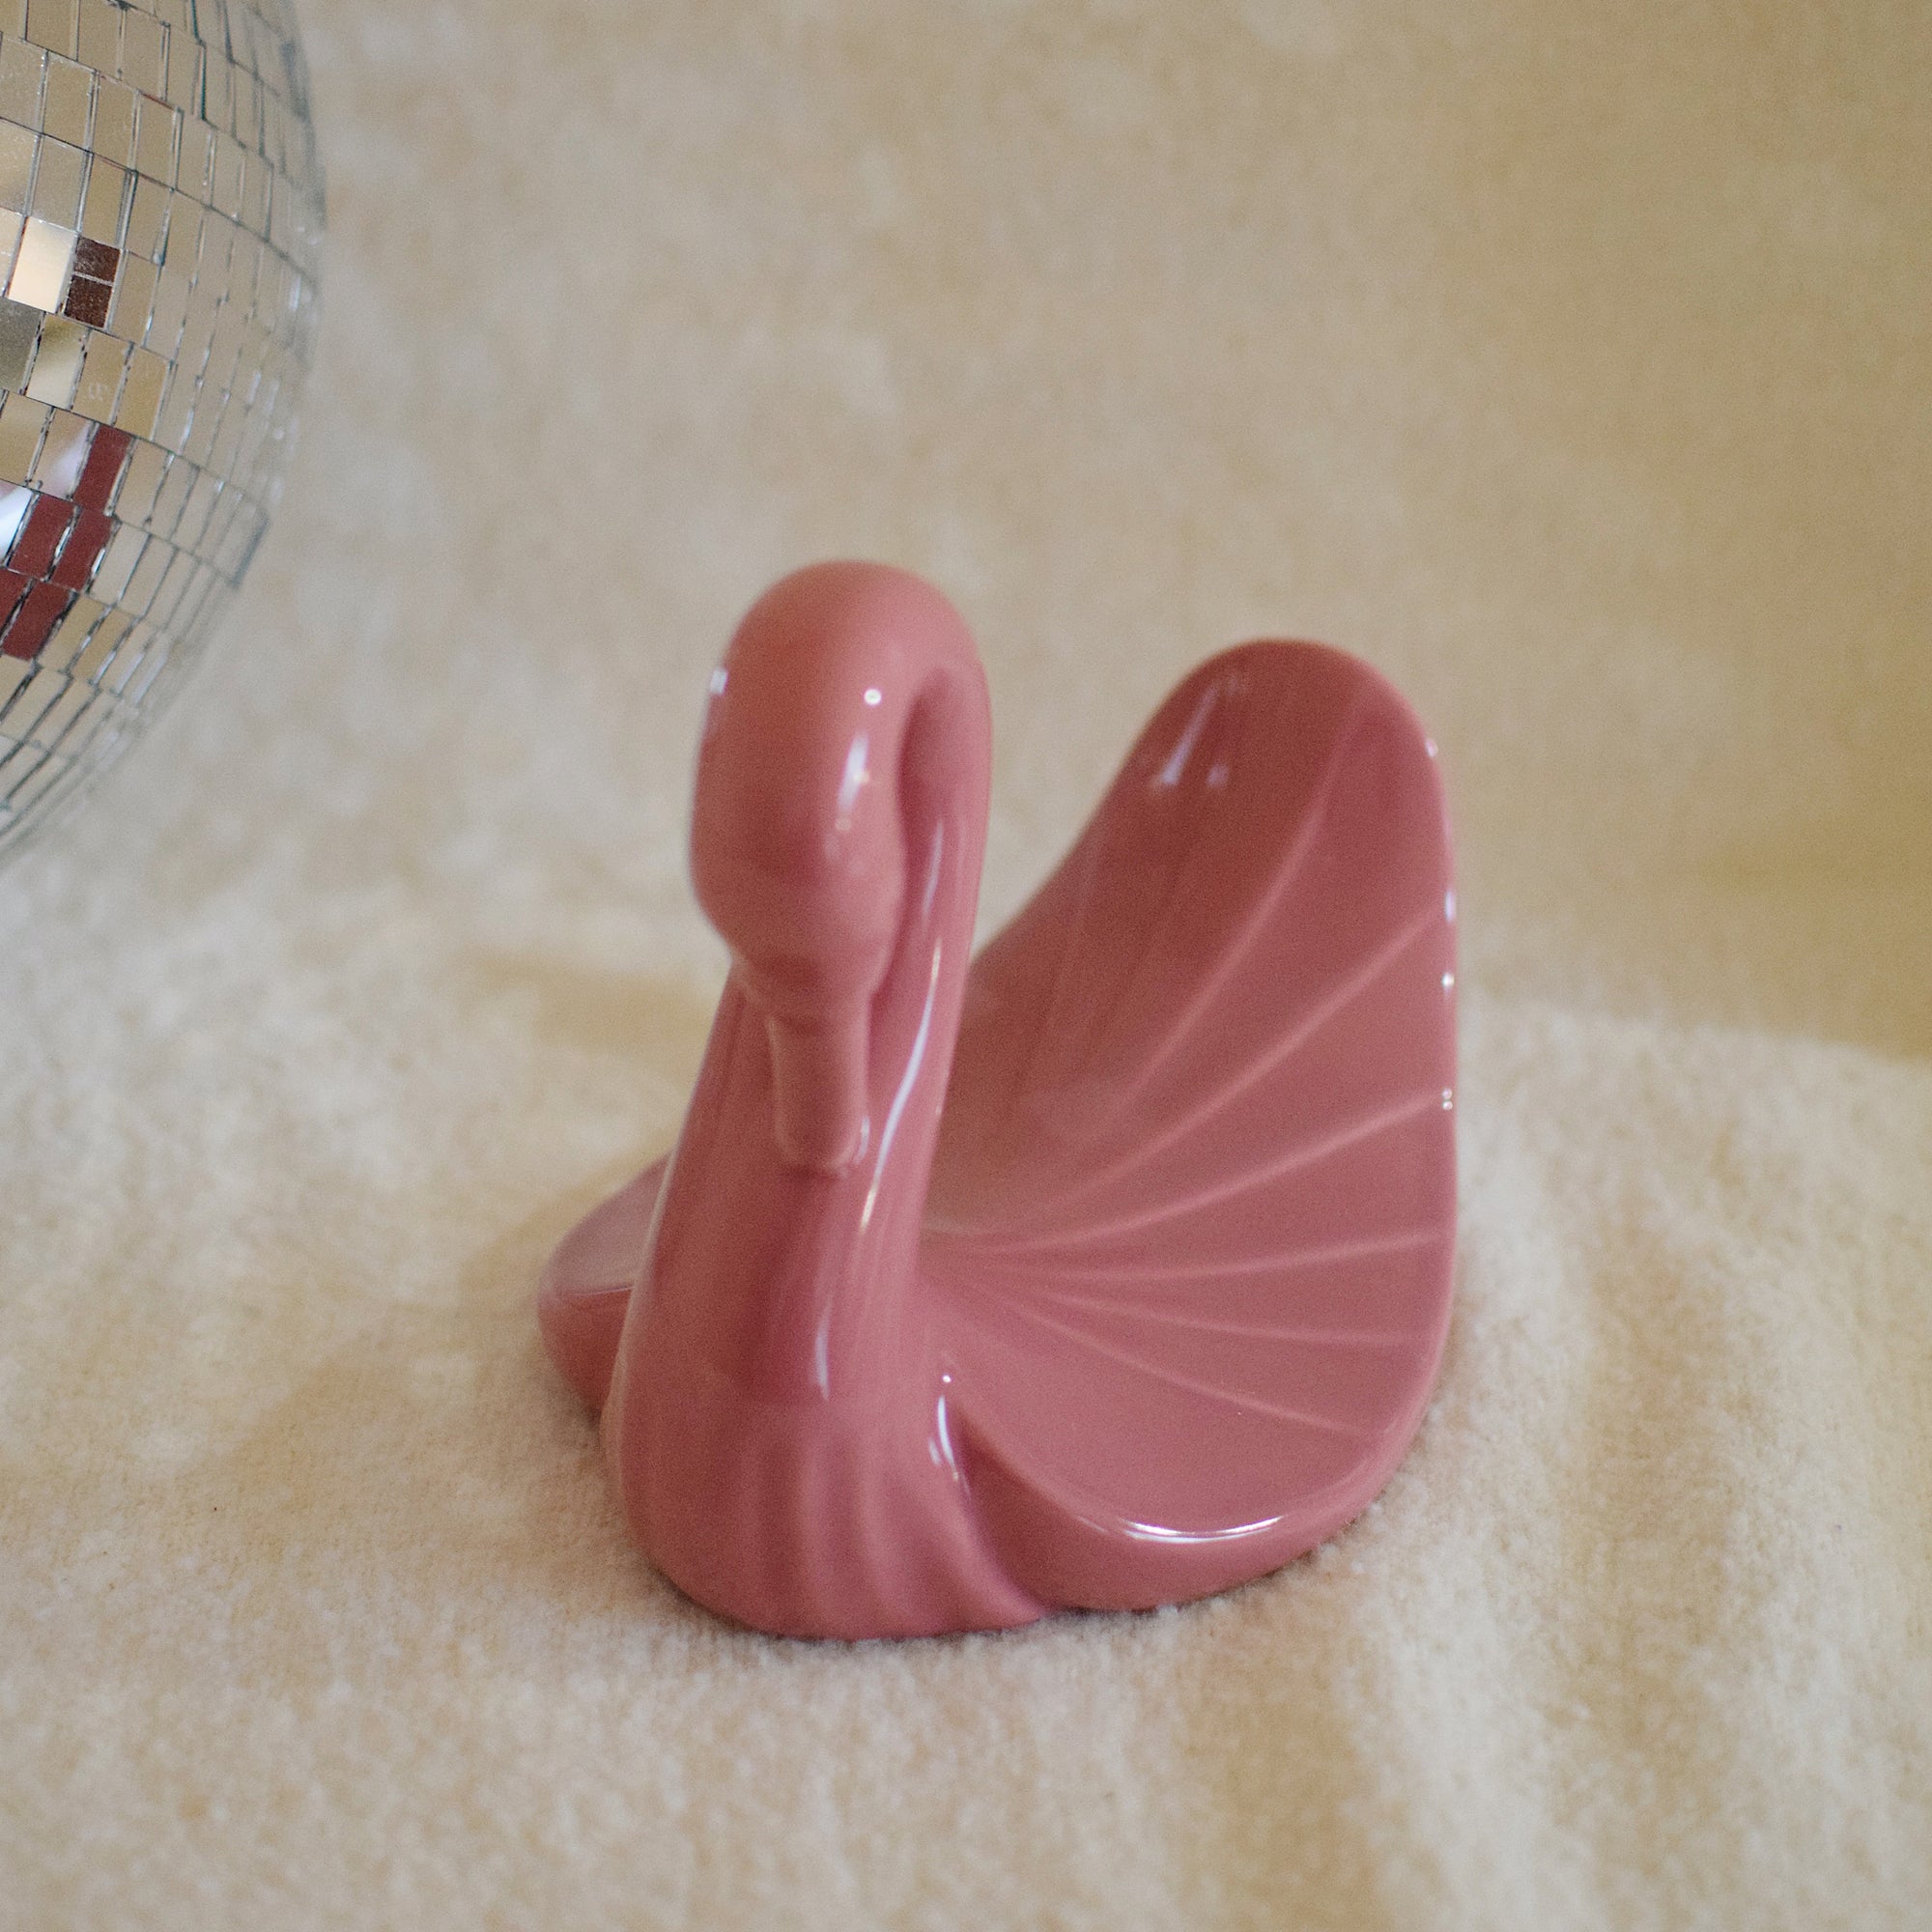 Thrifted Goods - Vintage Ceramic Swan Towel Holder (Rose Pink)